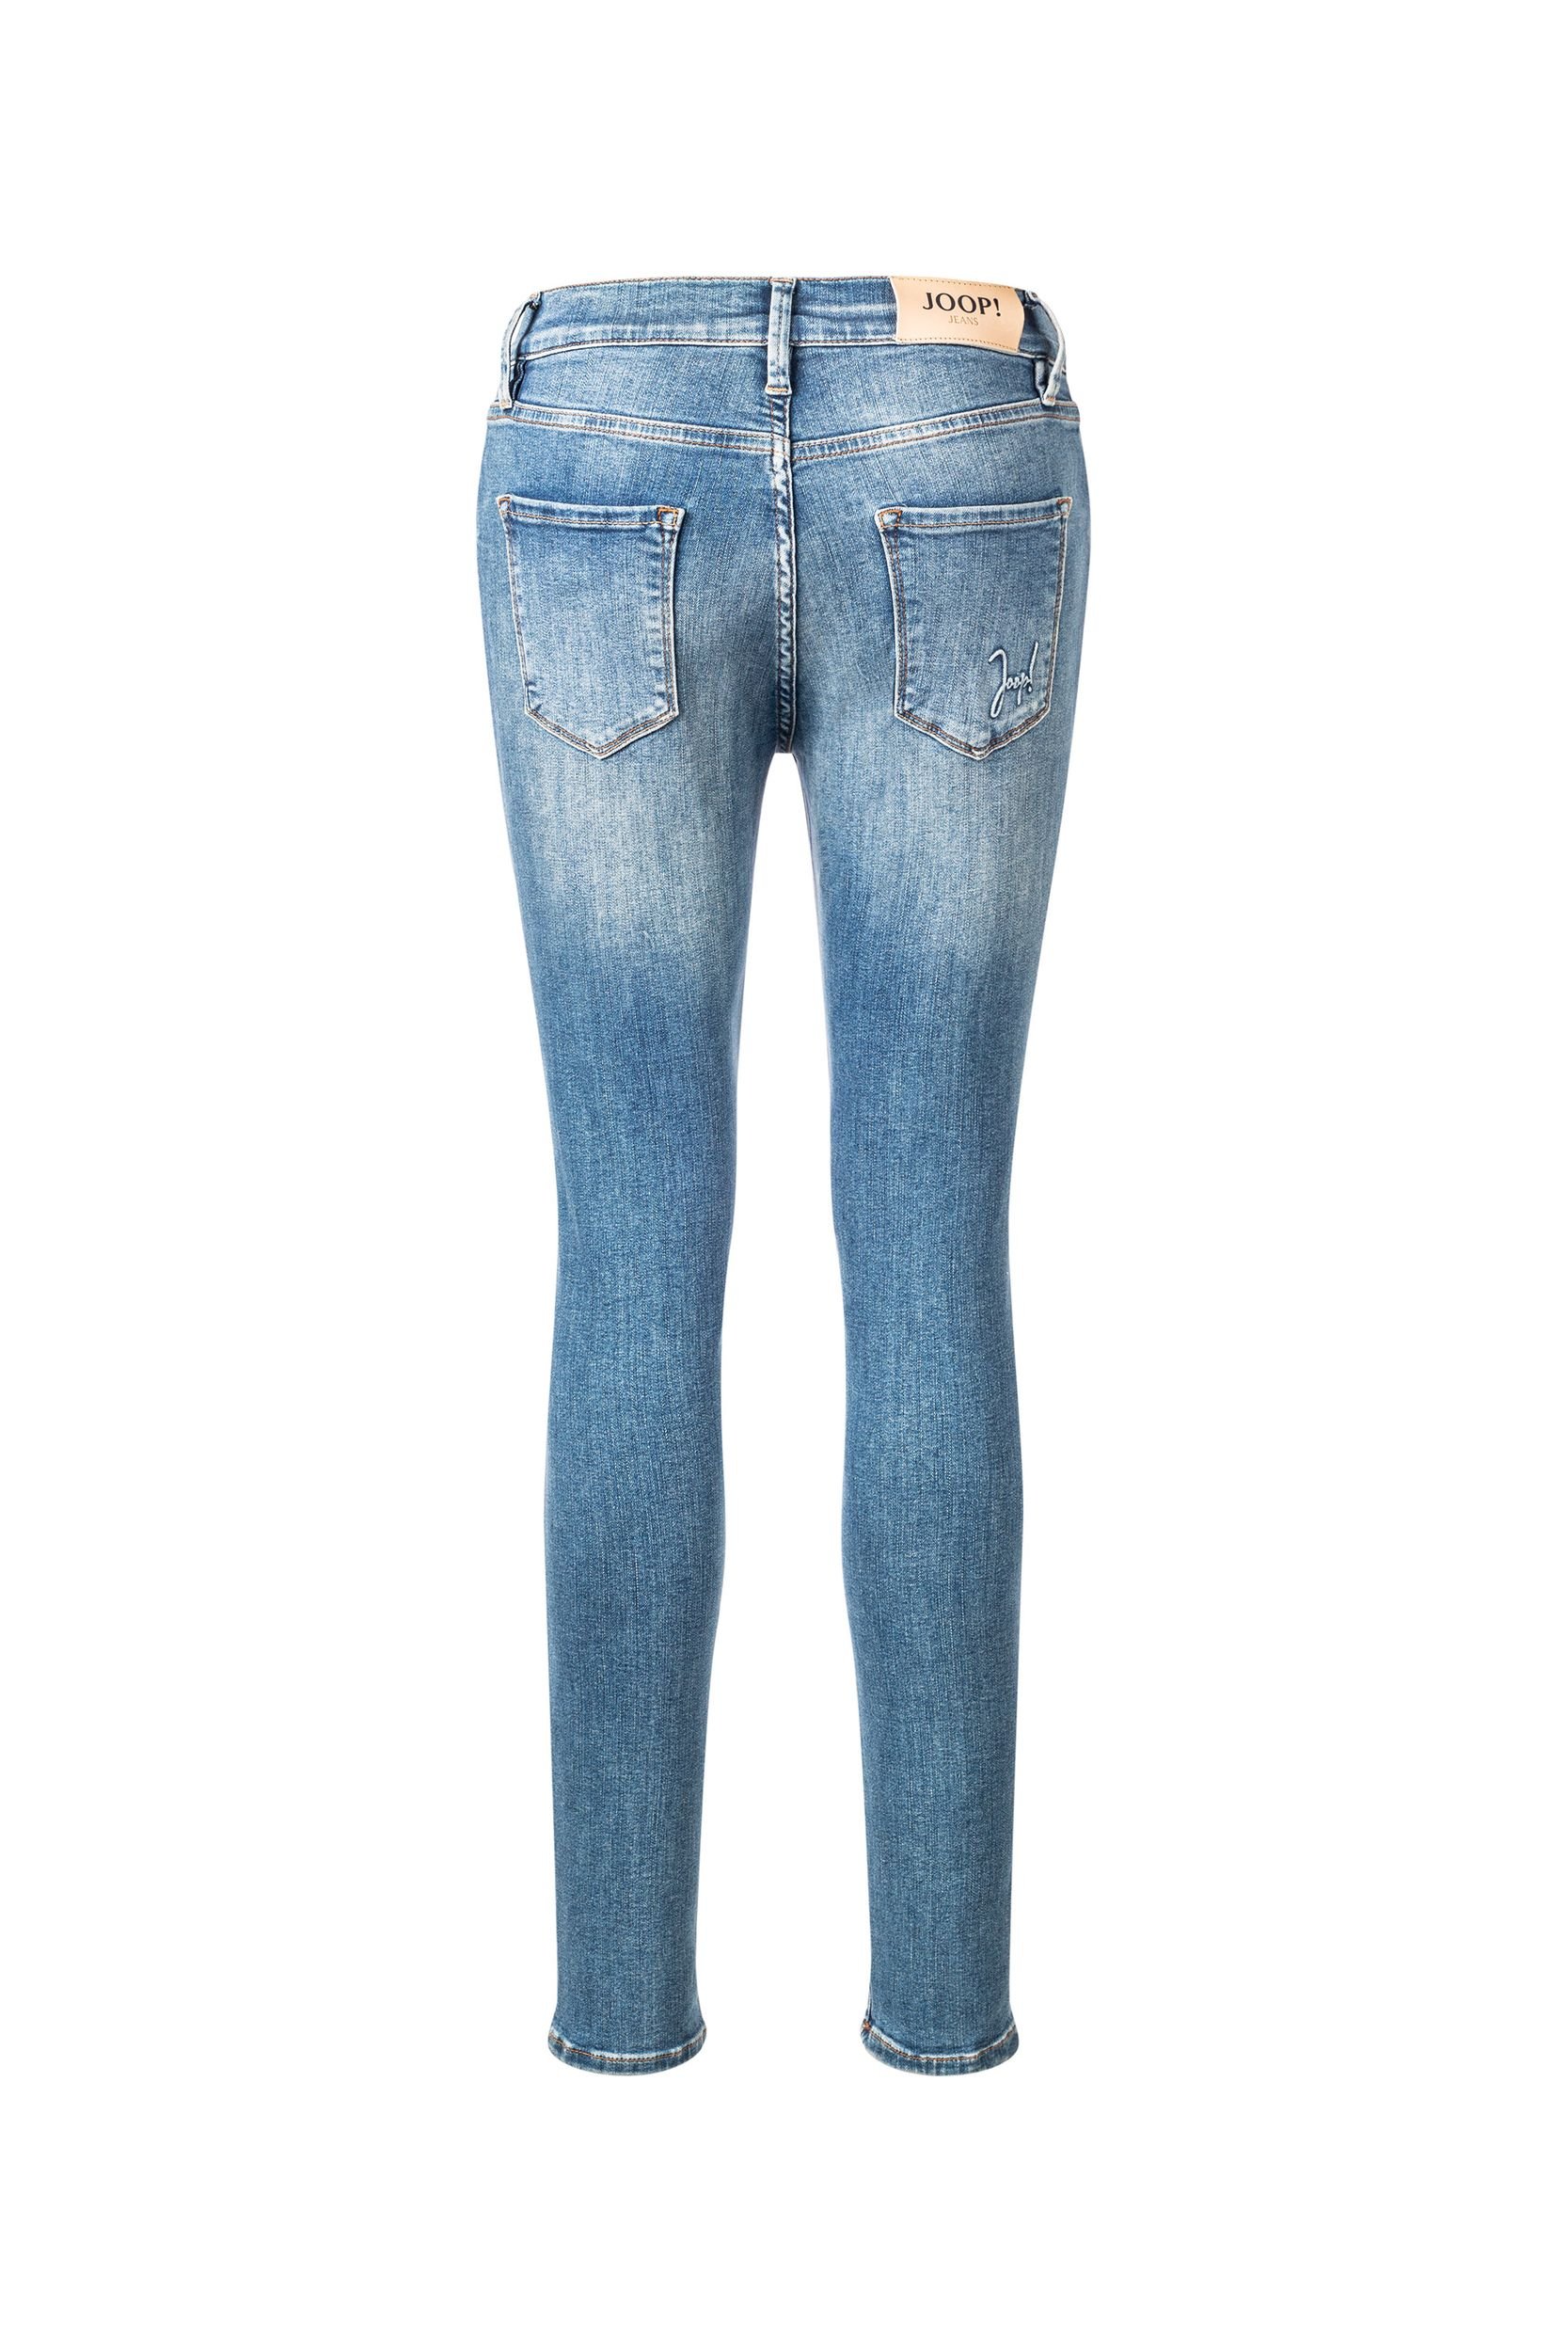 Joop Slim-Jeans Sol in medium Blue Washed